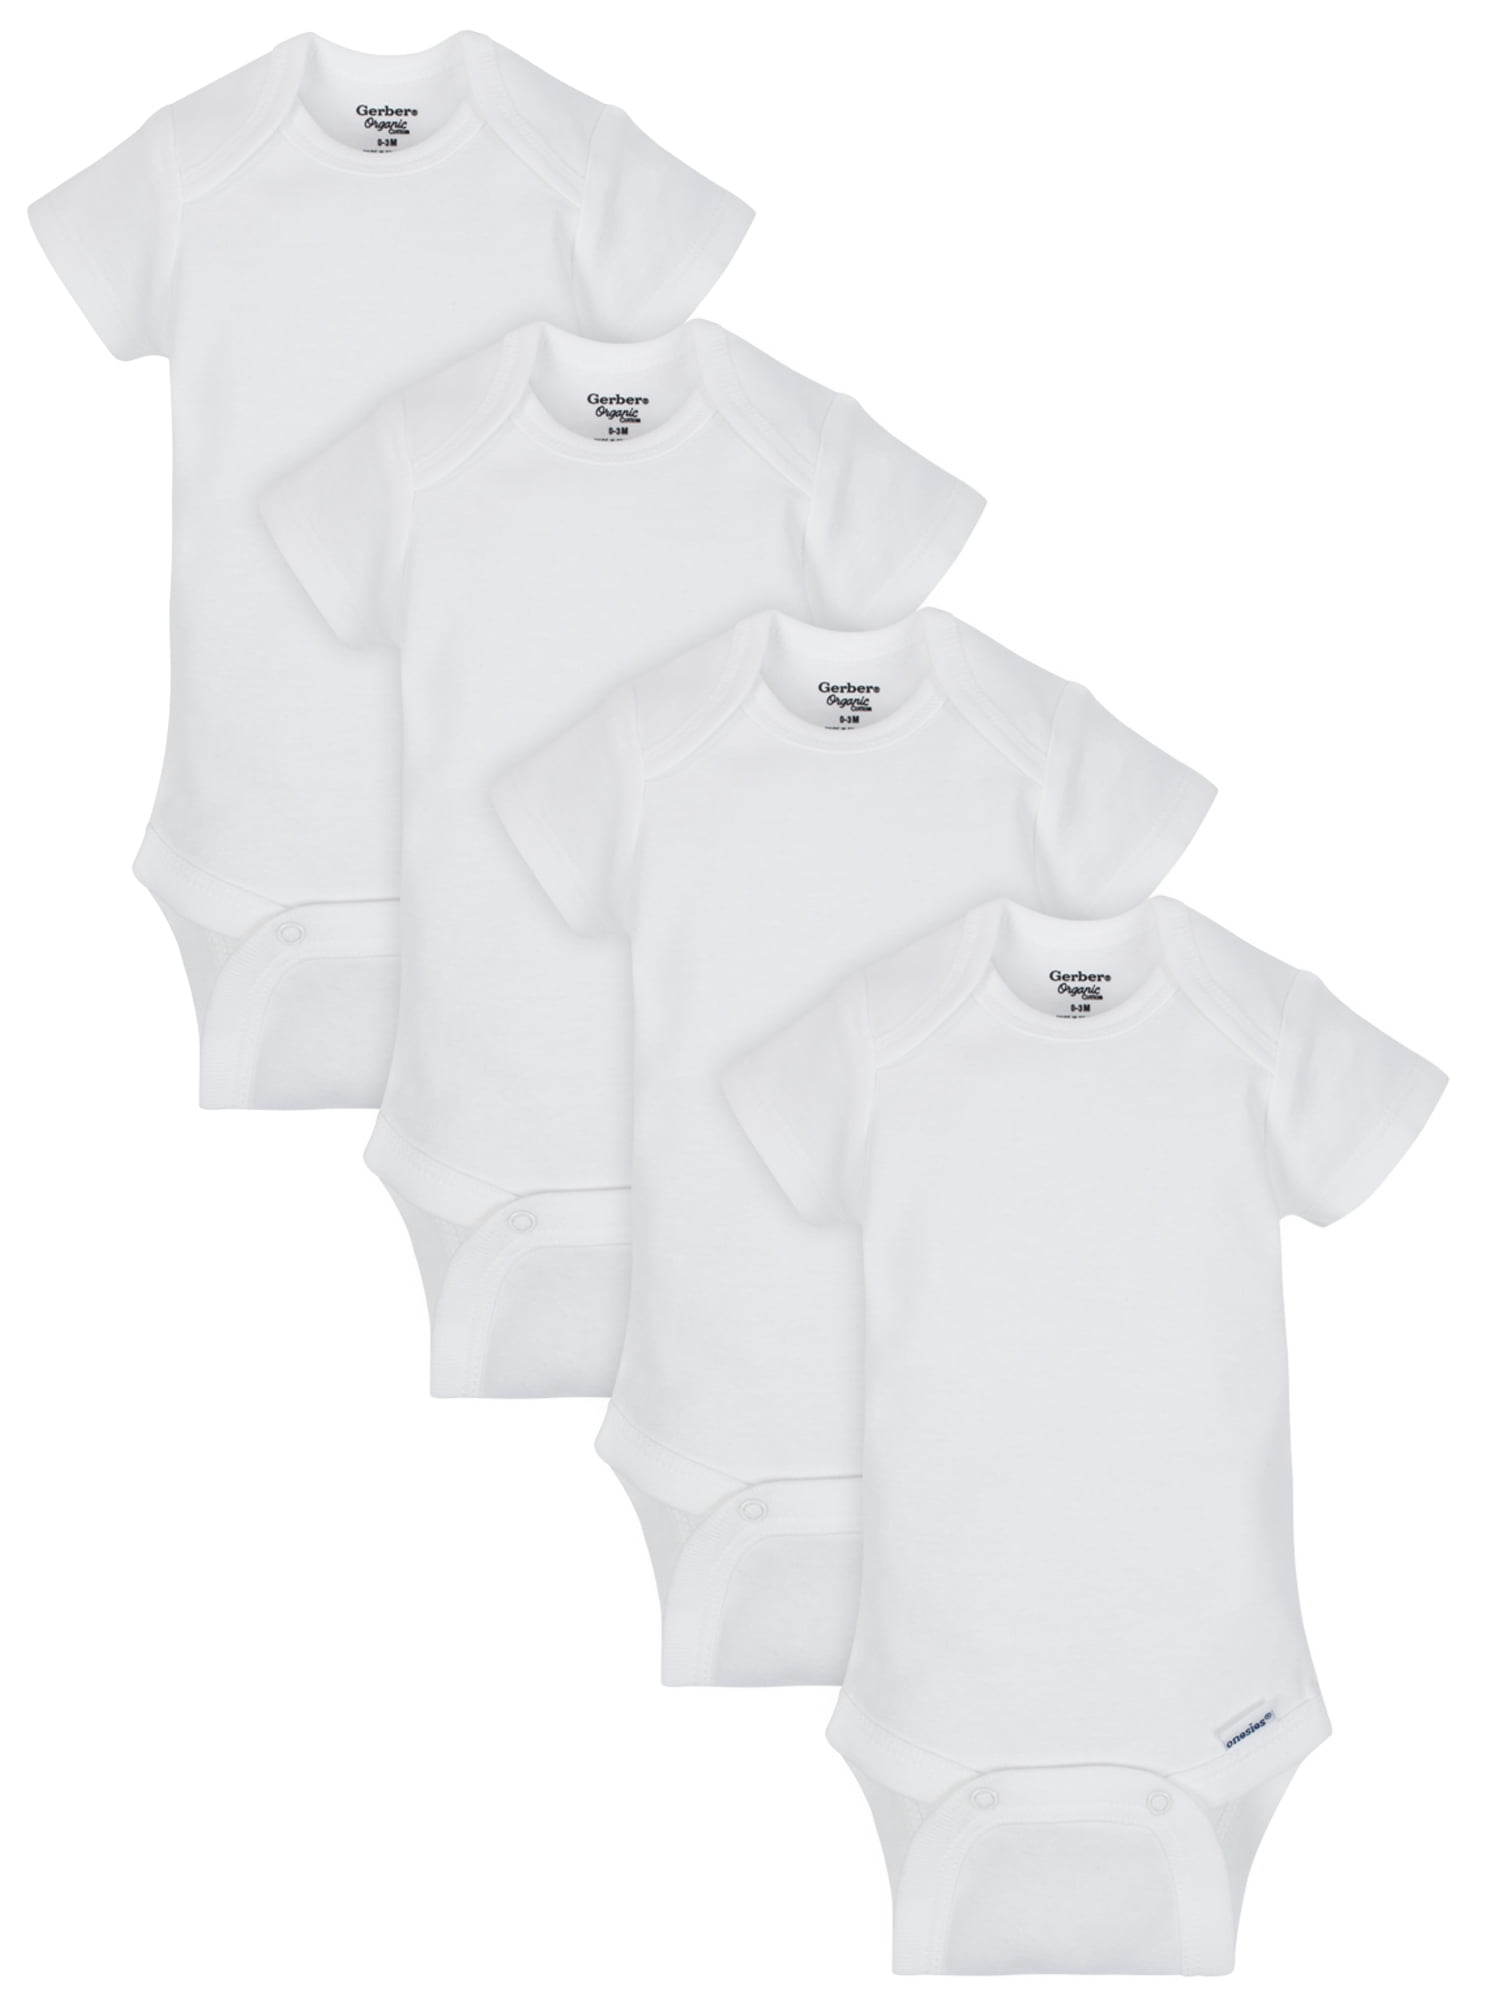 Gerber Baby Boy, Baby Girl, & Unisex Short Sleeve White Onesies Bodysuits, 4 Pack, Preemie-24 Months